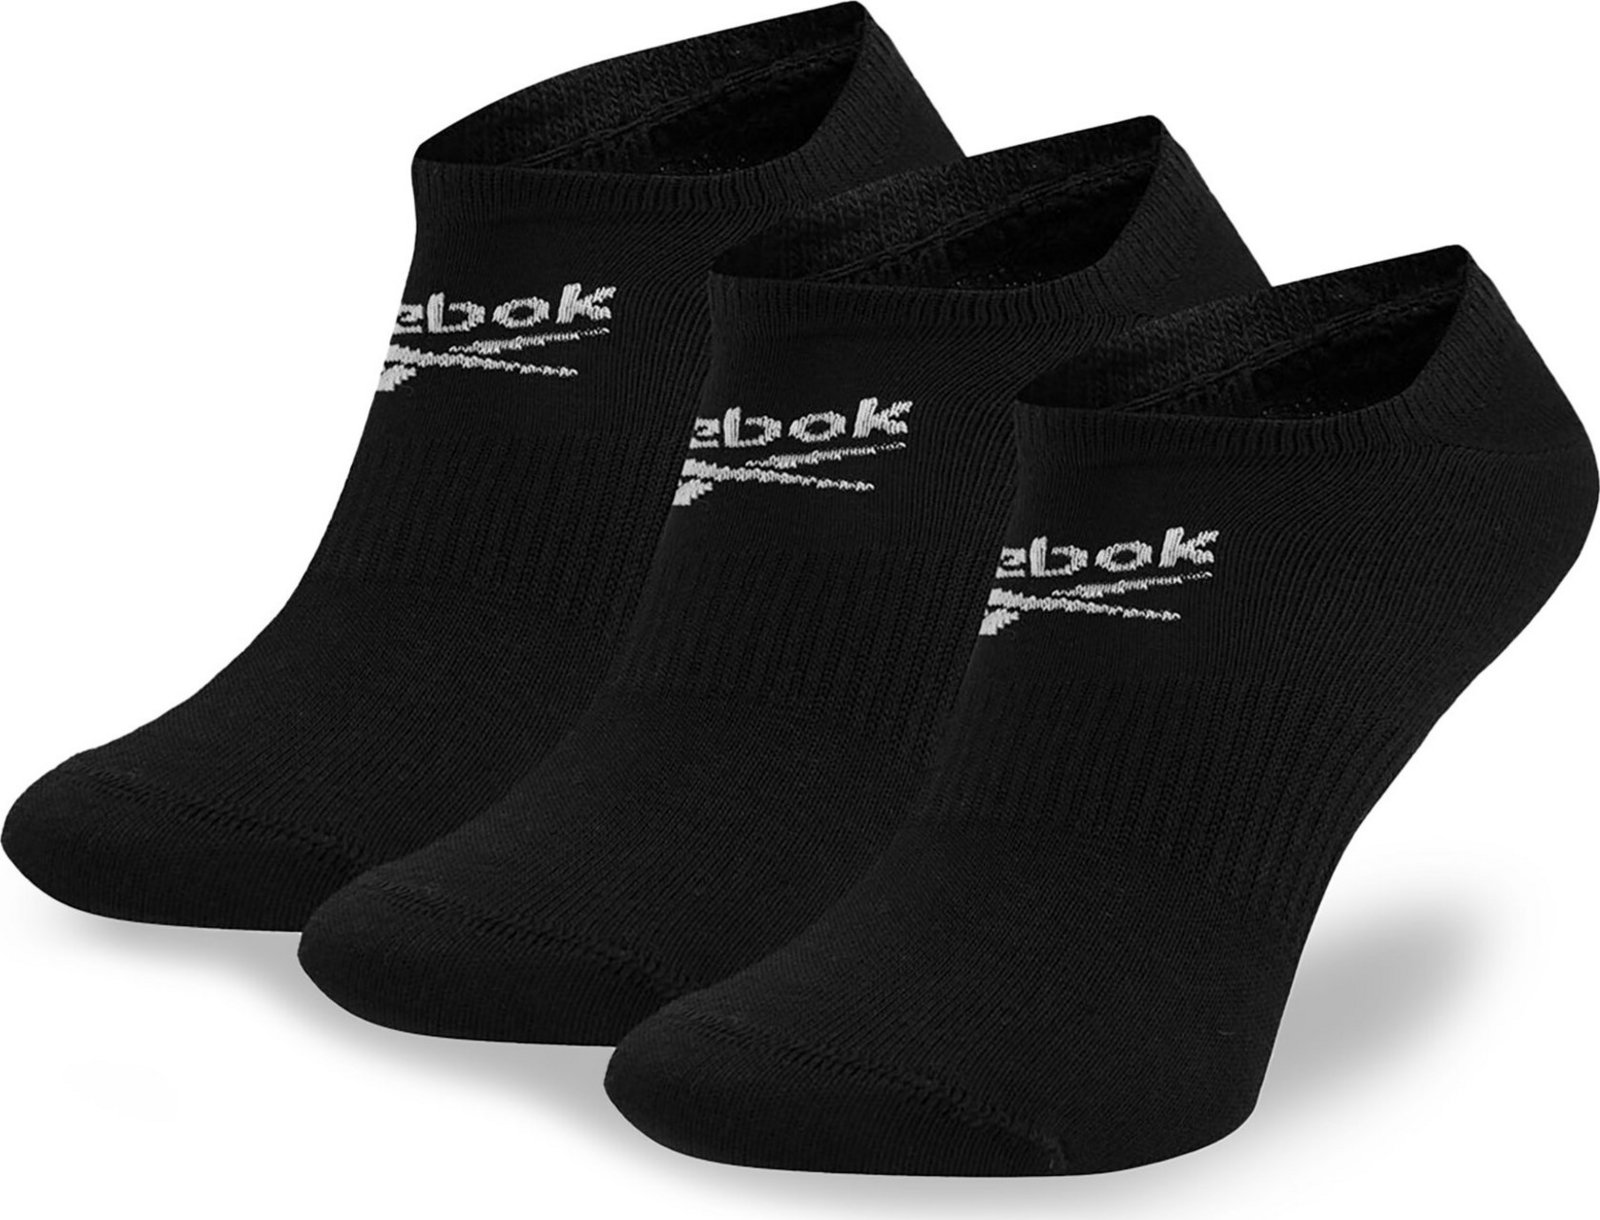 Sada 3 párů nízkých ponožek unisex Reebok R0353-SS24 (3-pack) Černá